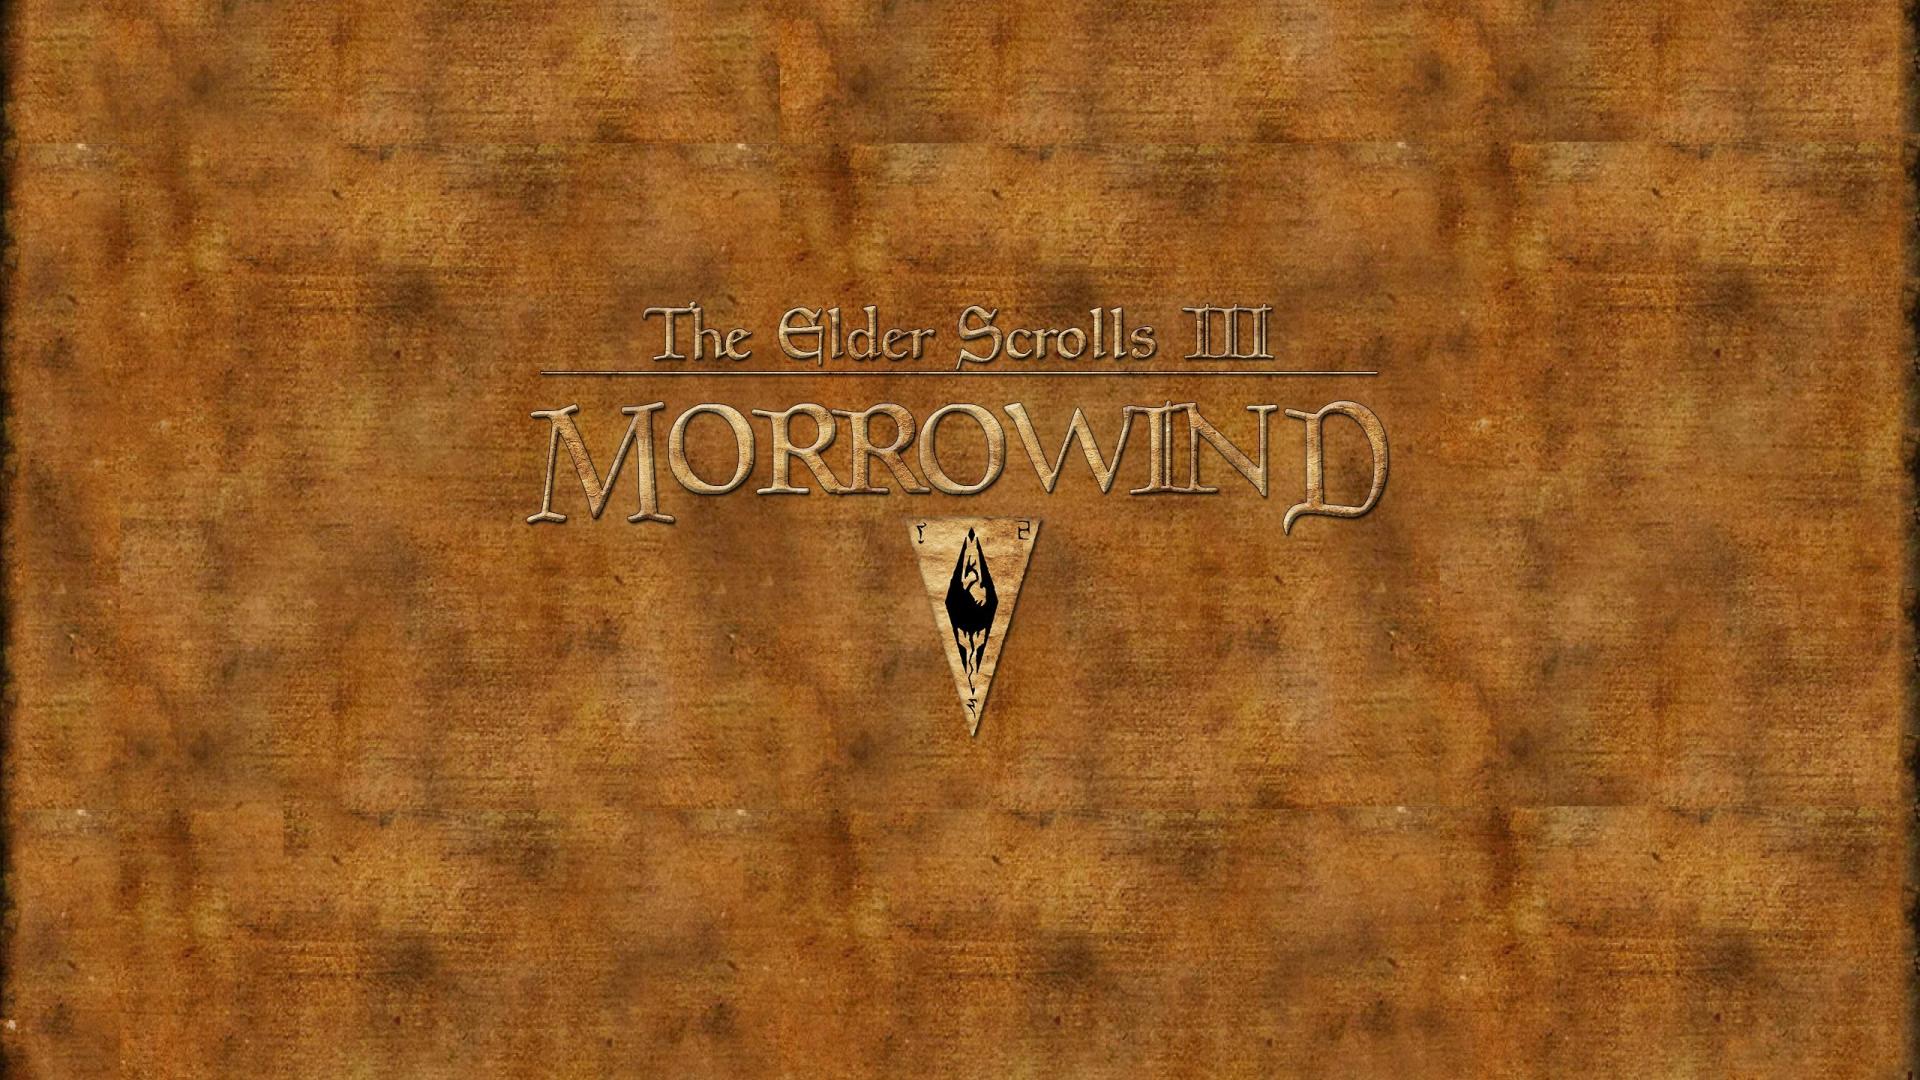 The Elder Scrolls Iii Morrowind Wallpaper